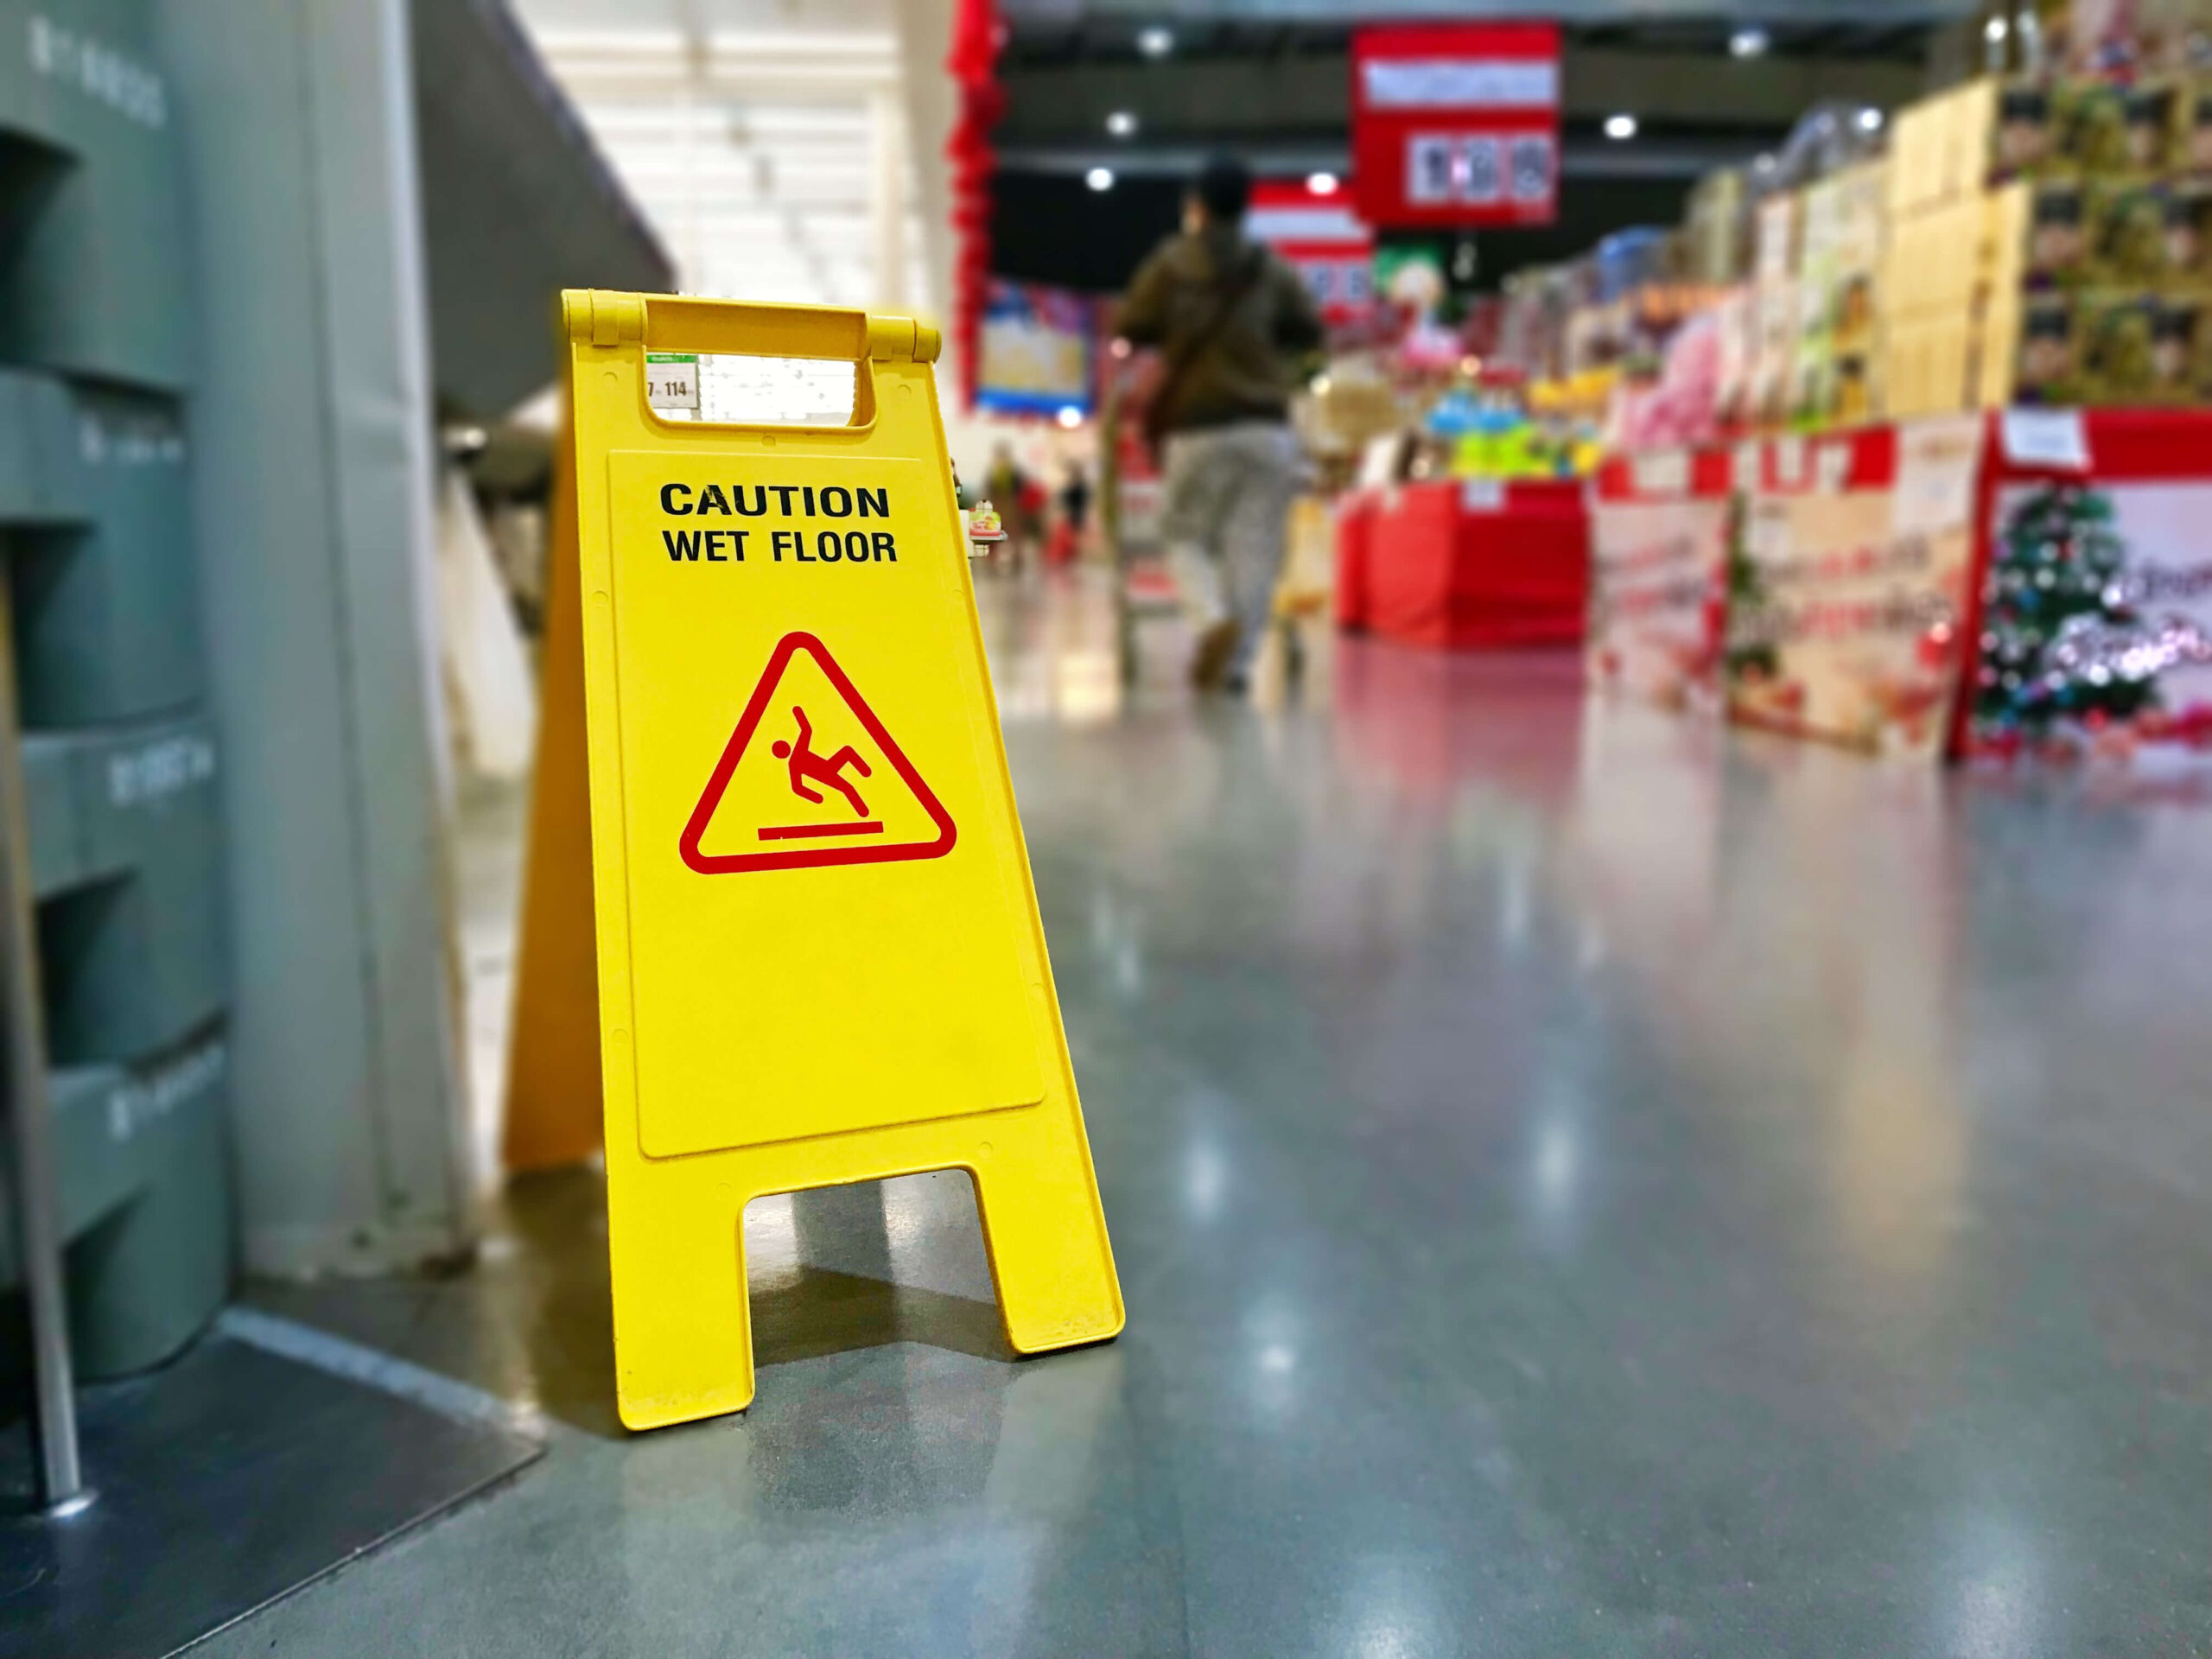 Caution wet floor sign in the supermarket.